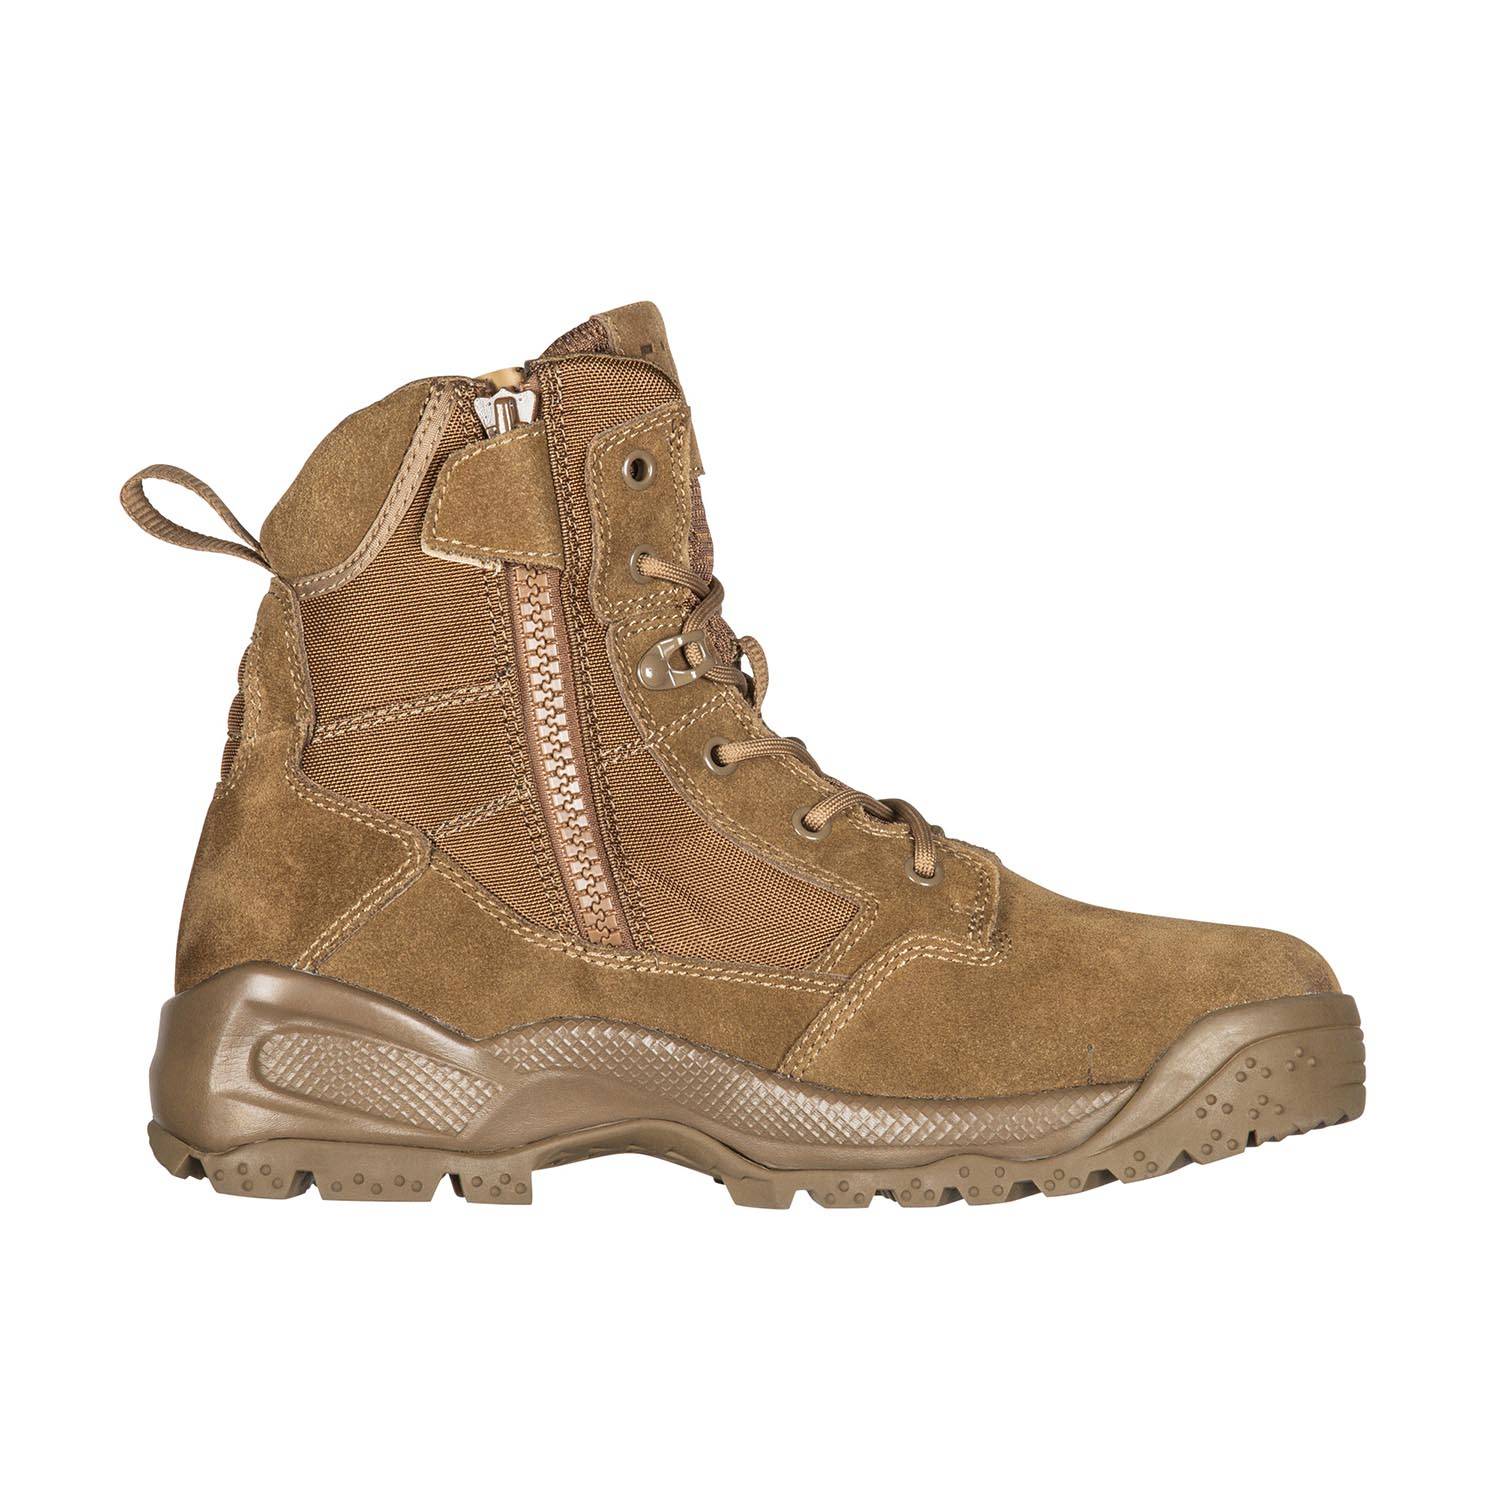 5.11 Tactical 6" A.T.A.C. Side Zip Desert Boots